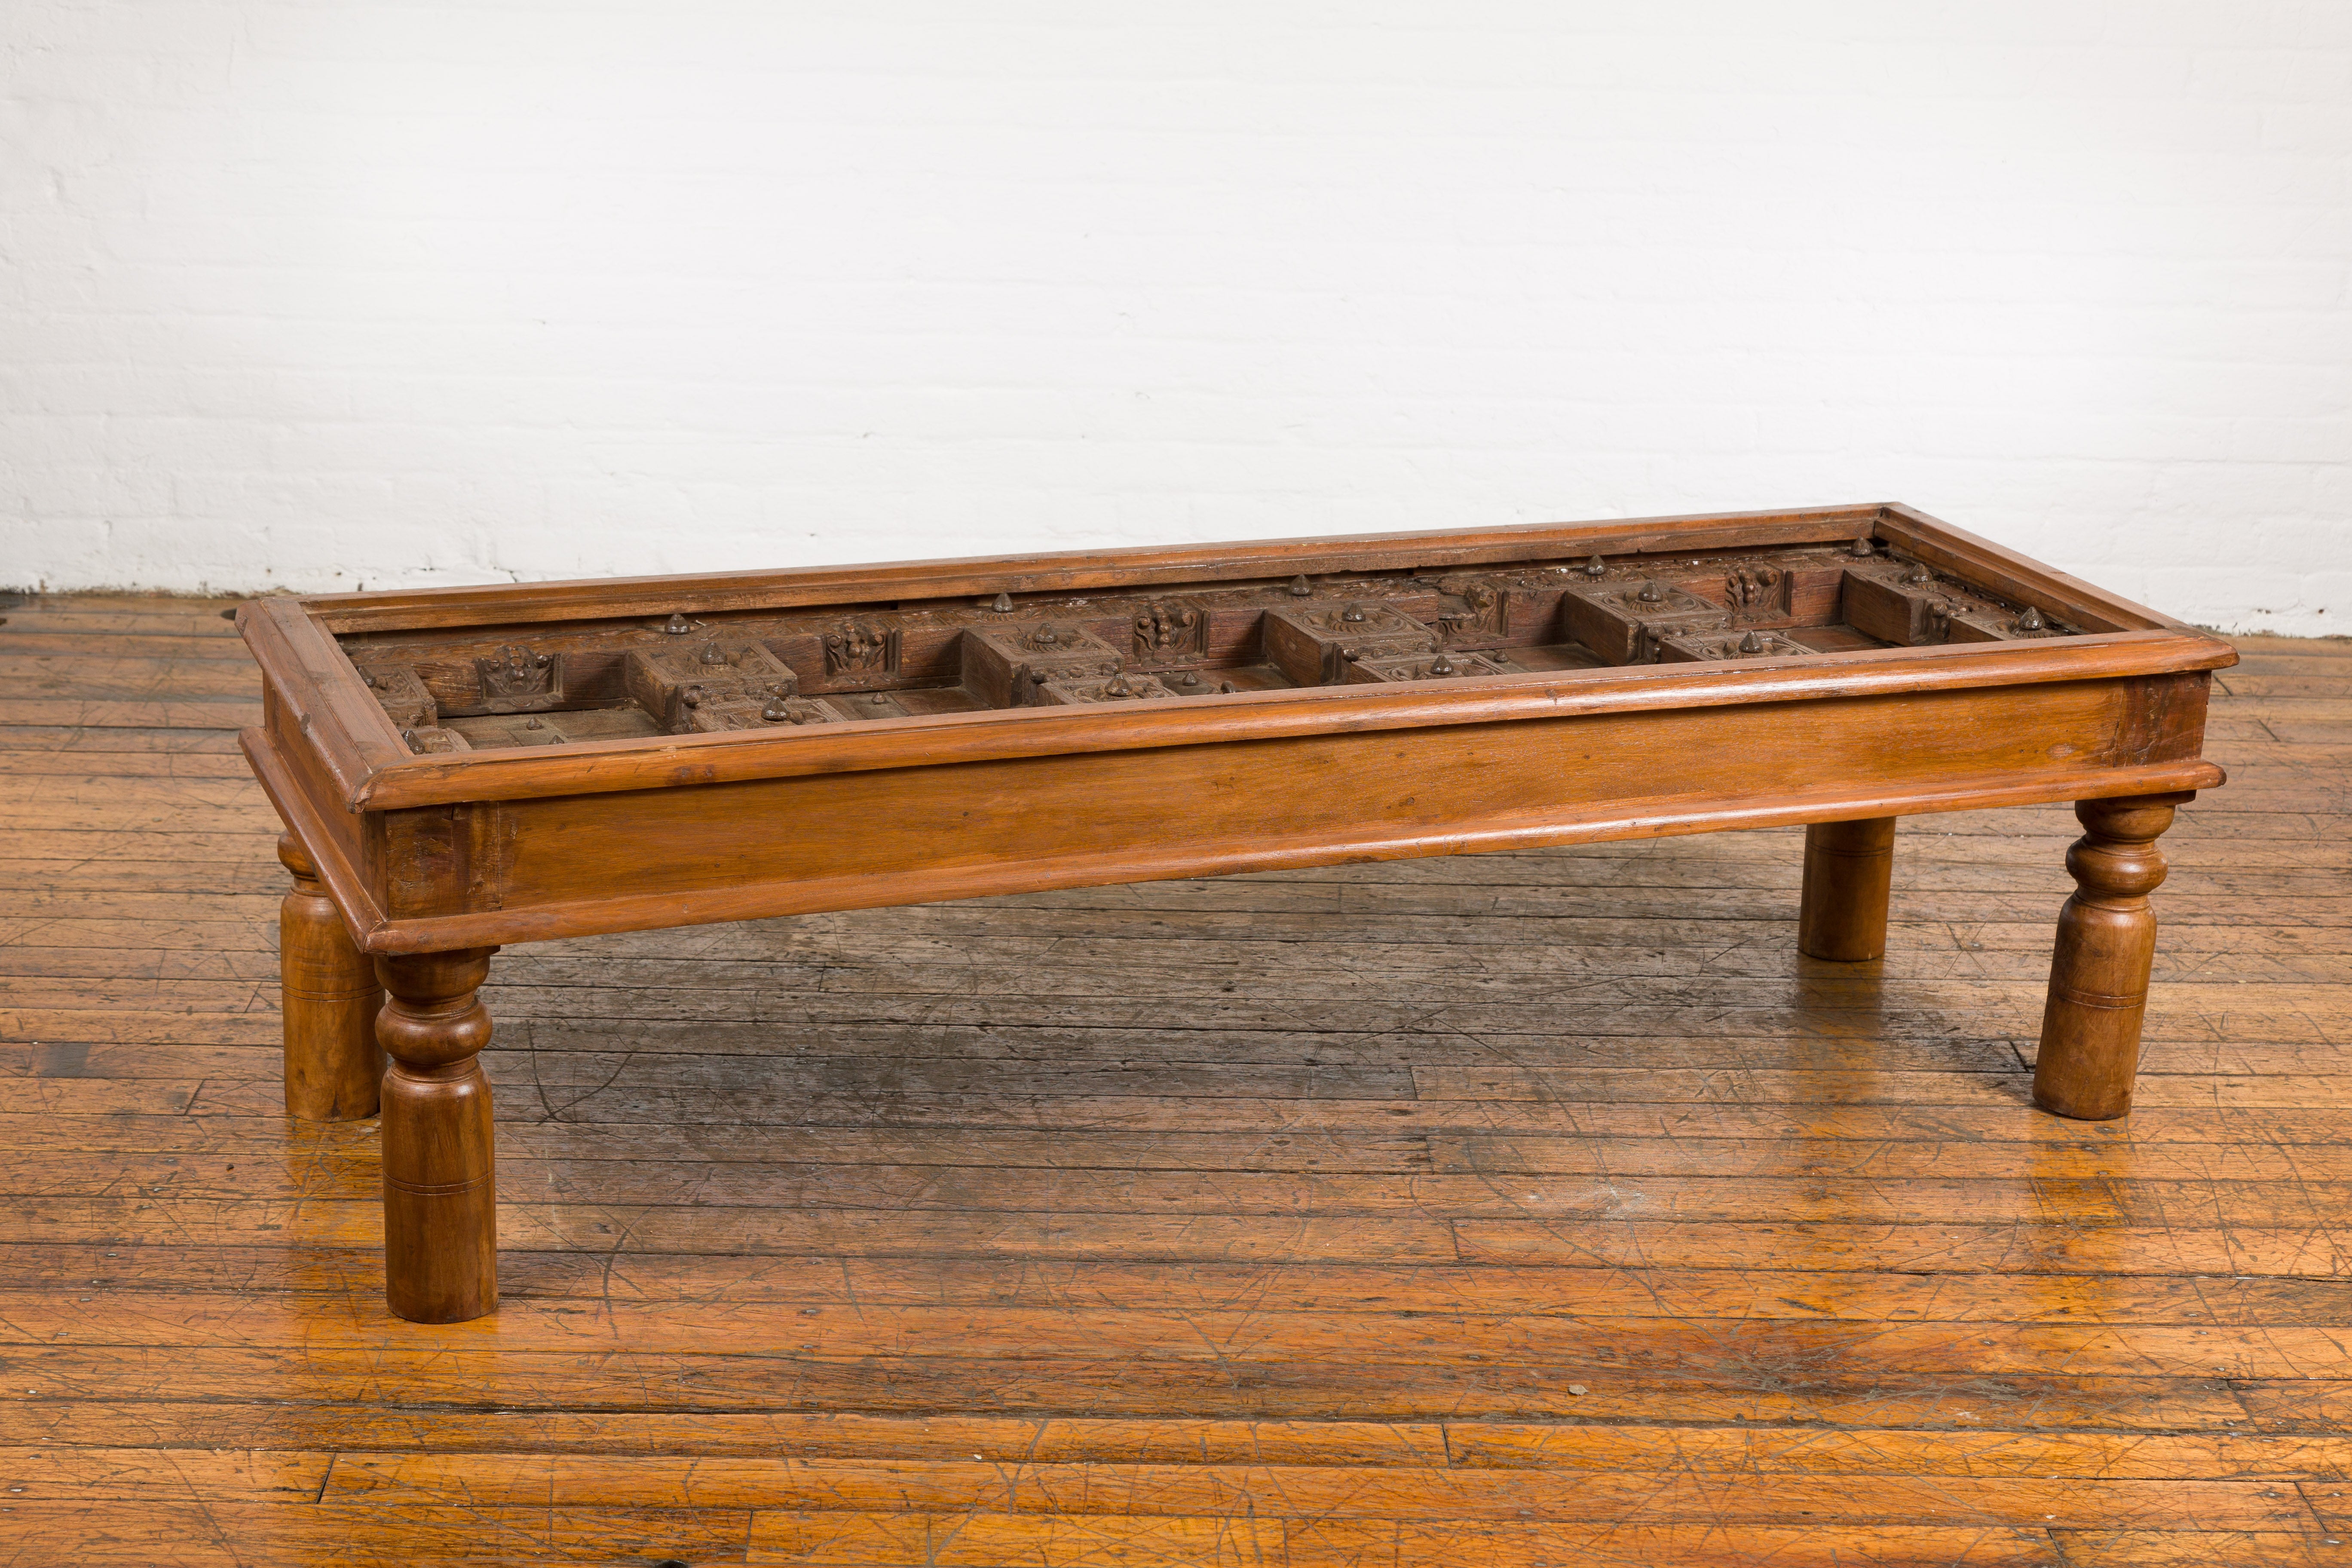 Une ancienne porte extérieure indienne transformée en table basse avec des détails en bois de sheesham et en fer. Embrassez la tapisserie opulente de l'héritage indien avec cette table basse spectaculaire, magistralement réutilisée à partir d'une